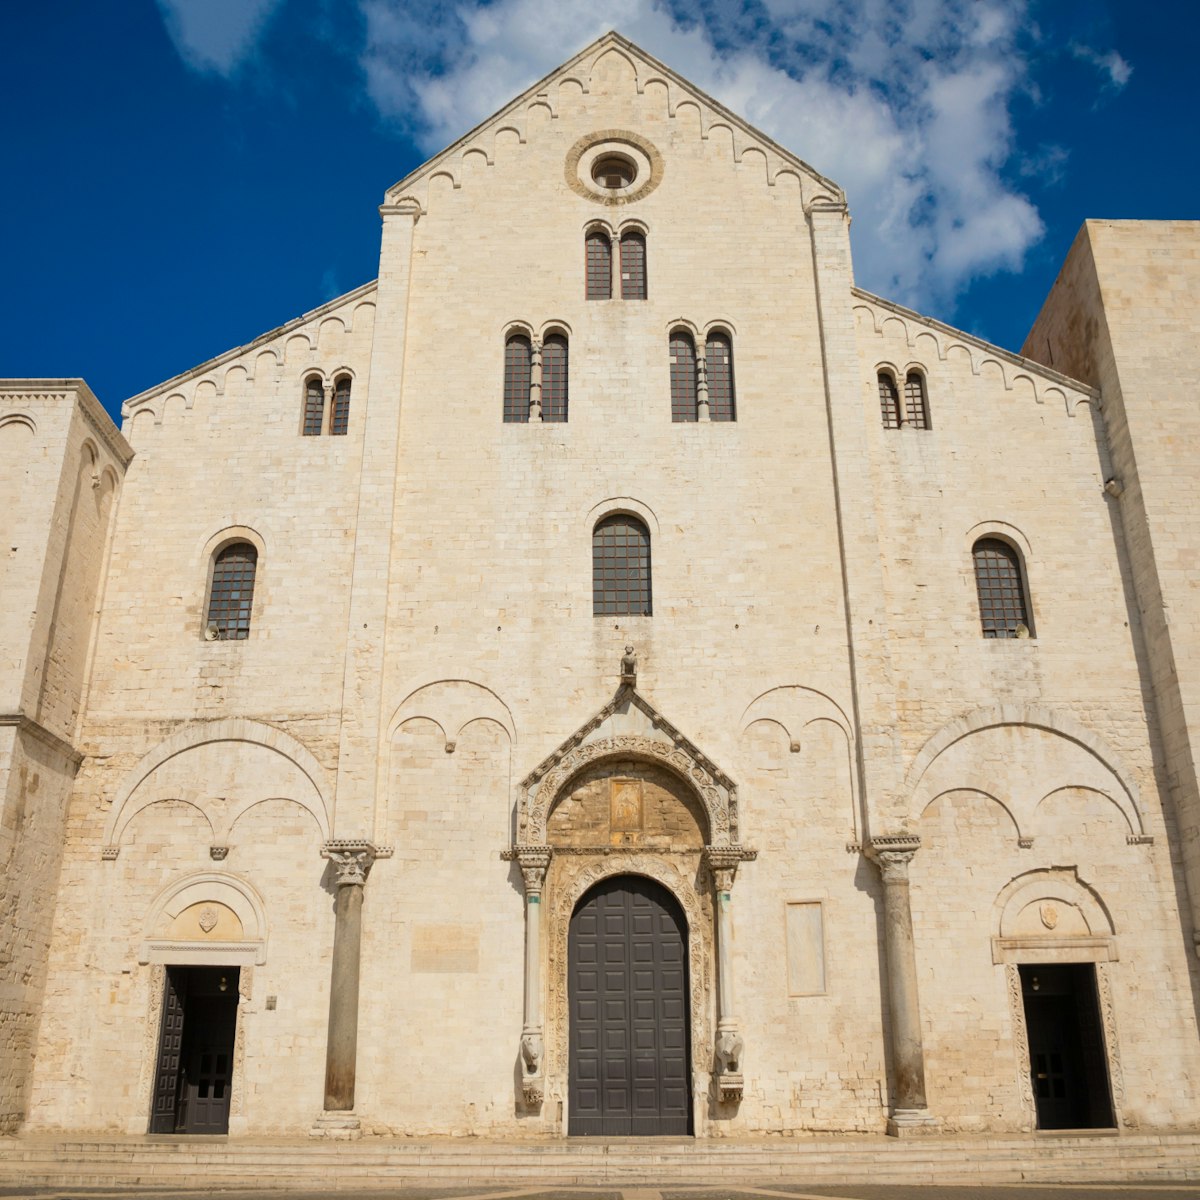 Bari, Italy - 5 May, 2018: Famous Saint Nicholas Saint Nicholas Basilica in old part of city Bari, Italy